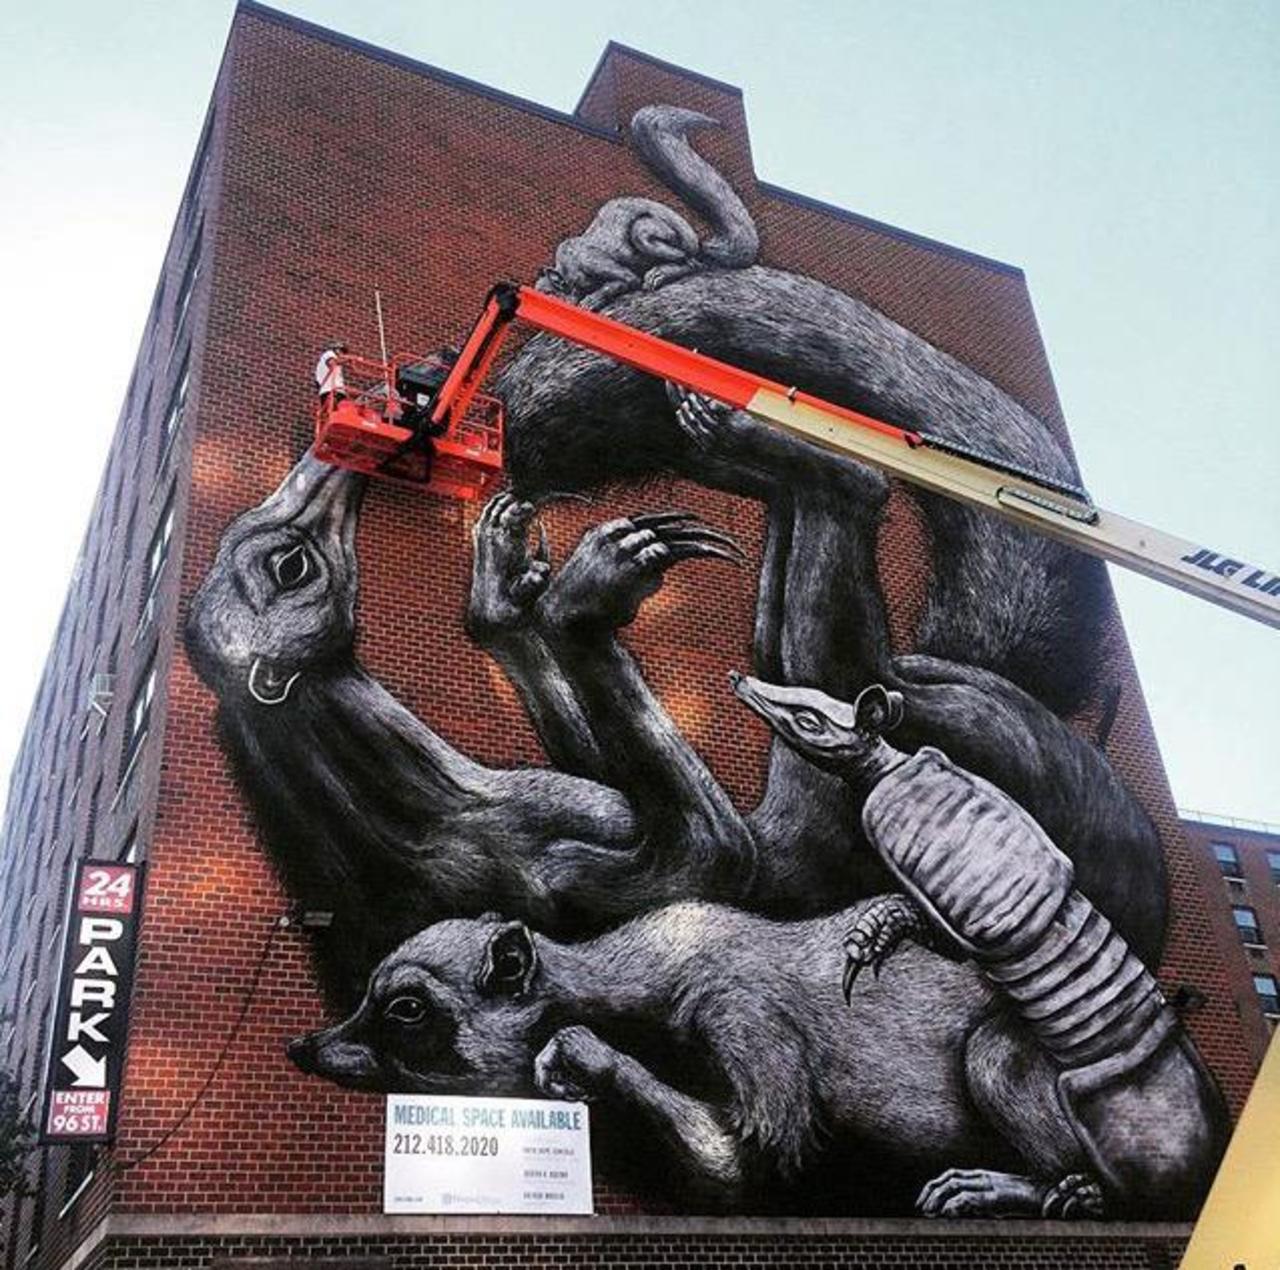 Street Art in progress by ROA in NYC

#art #graffiti #mural #streetart http://t.co/JuNsgOw6I0